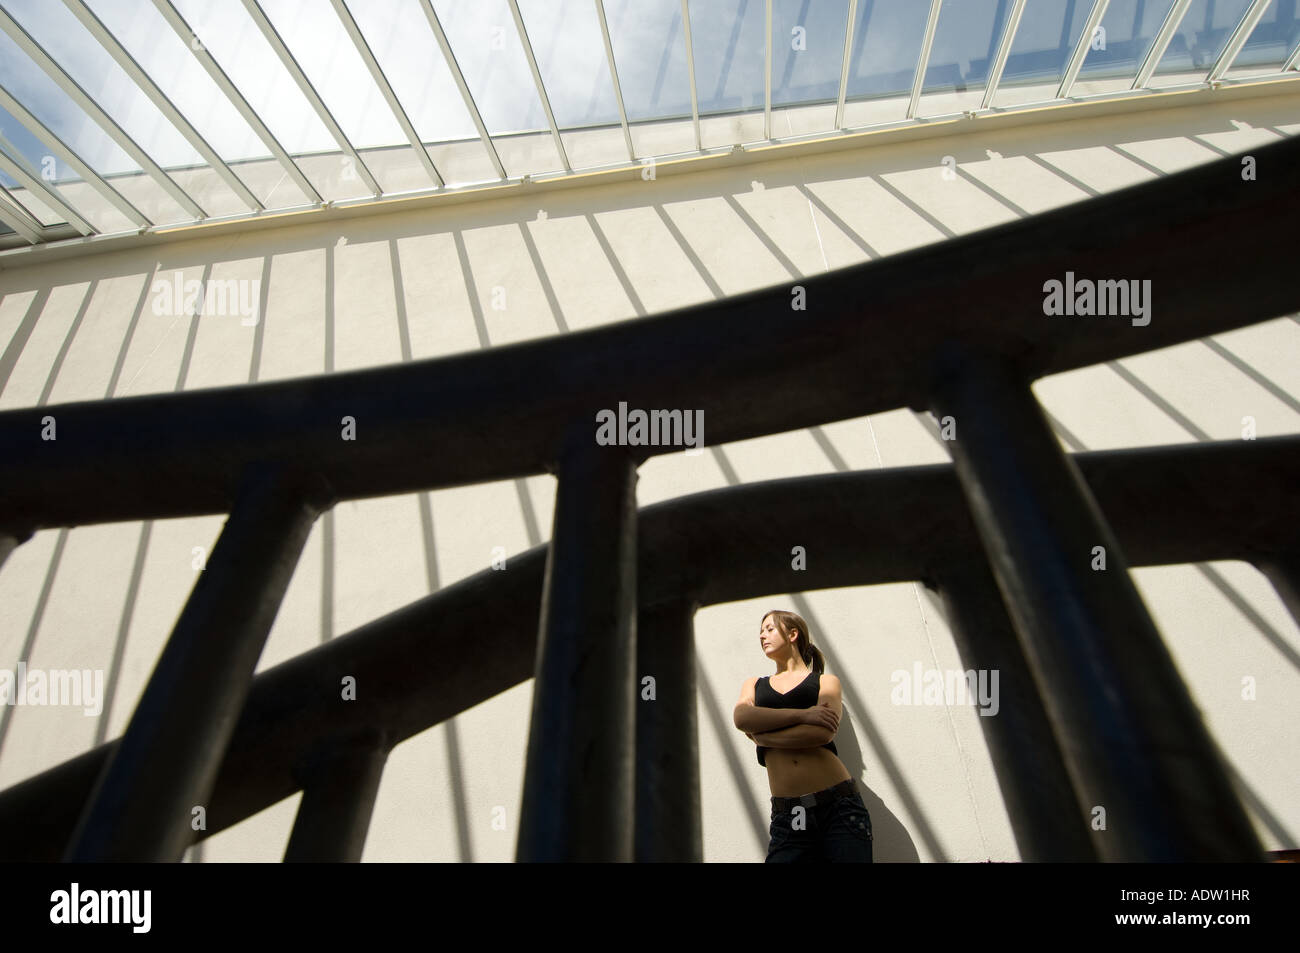 Jeune femme à l'intérieur avec les ombres de formes graphiques casting windows sur mur derrière elle Banque D'Images